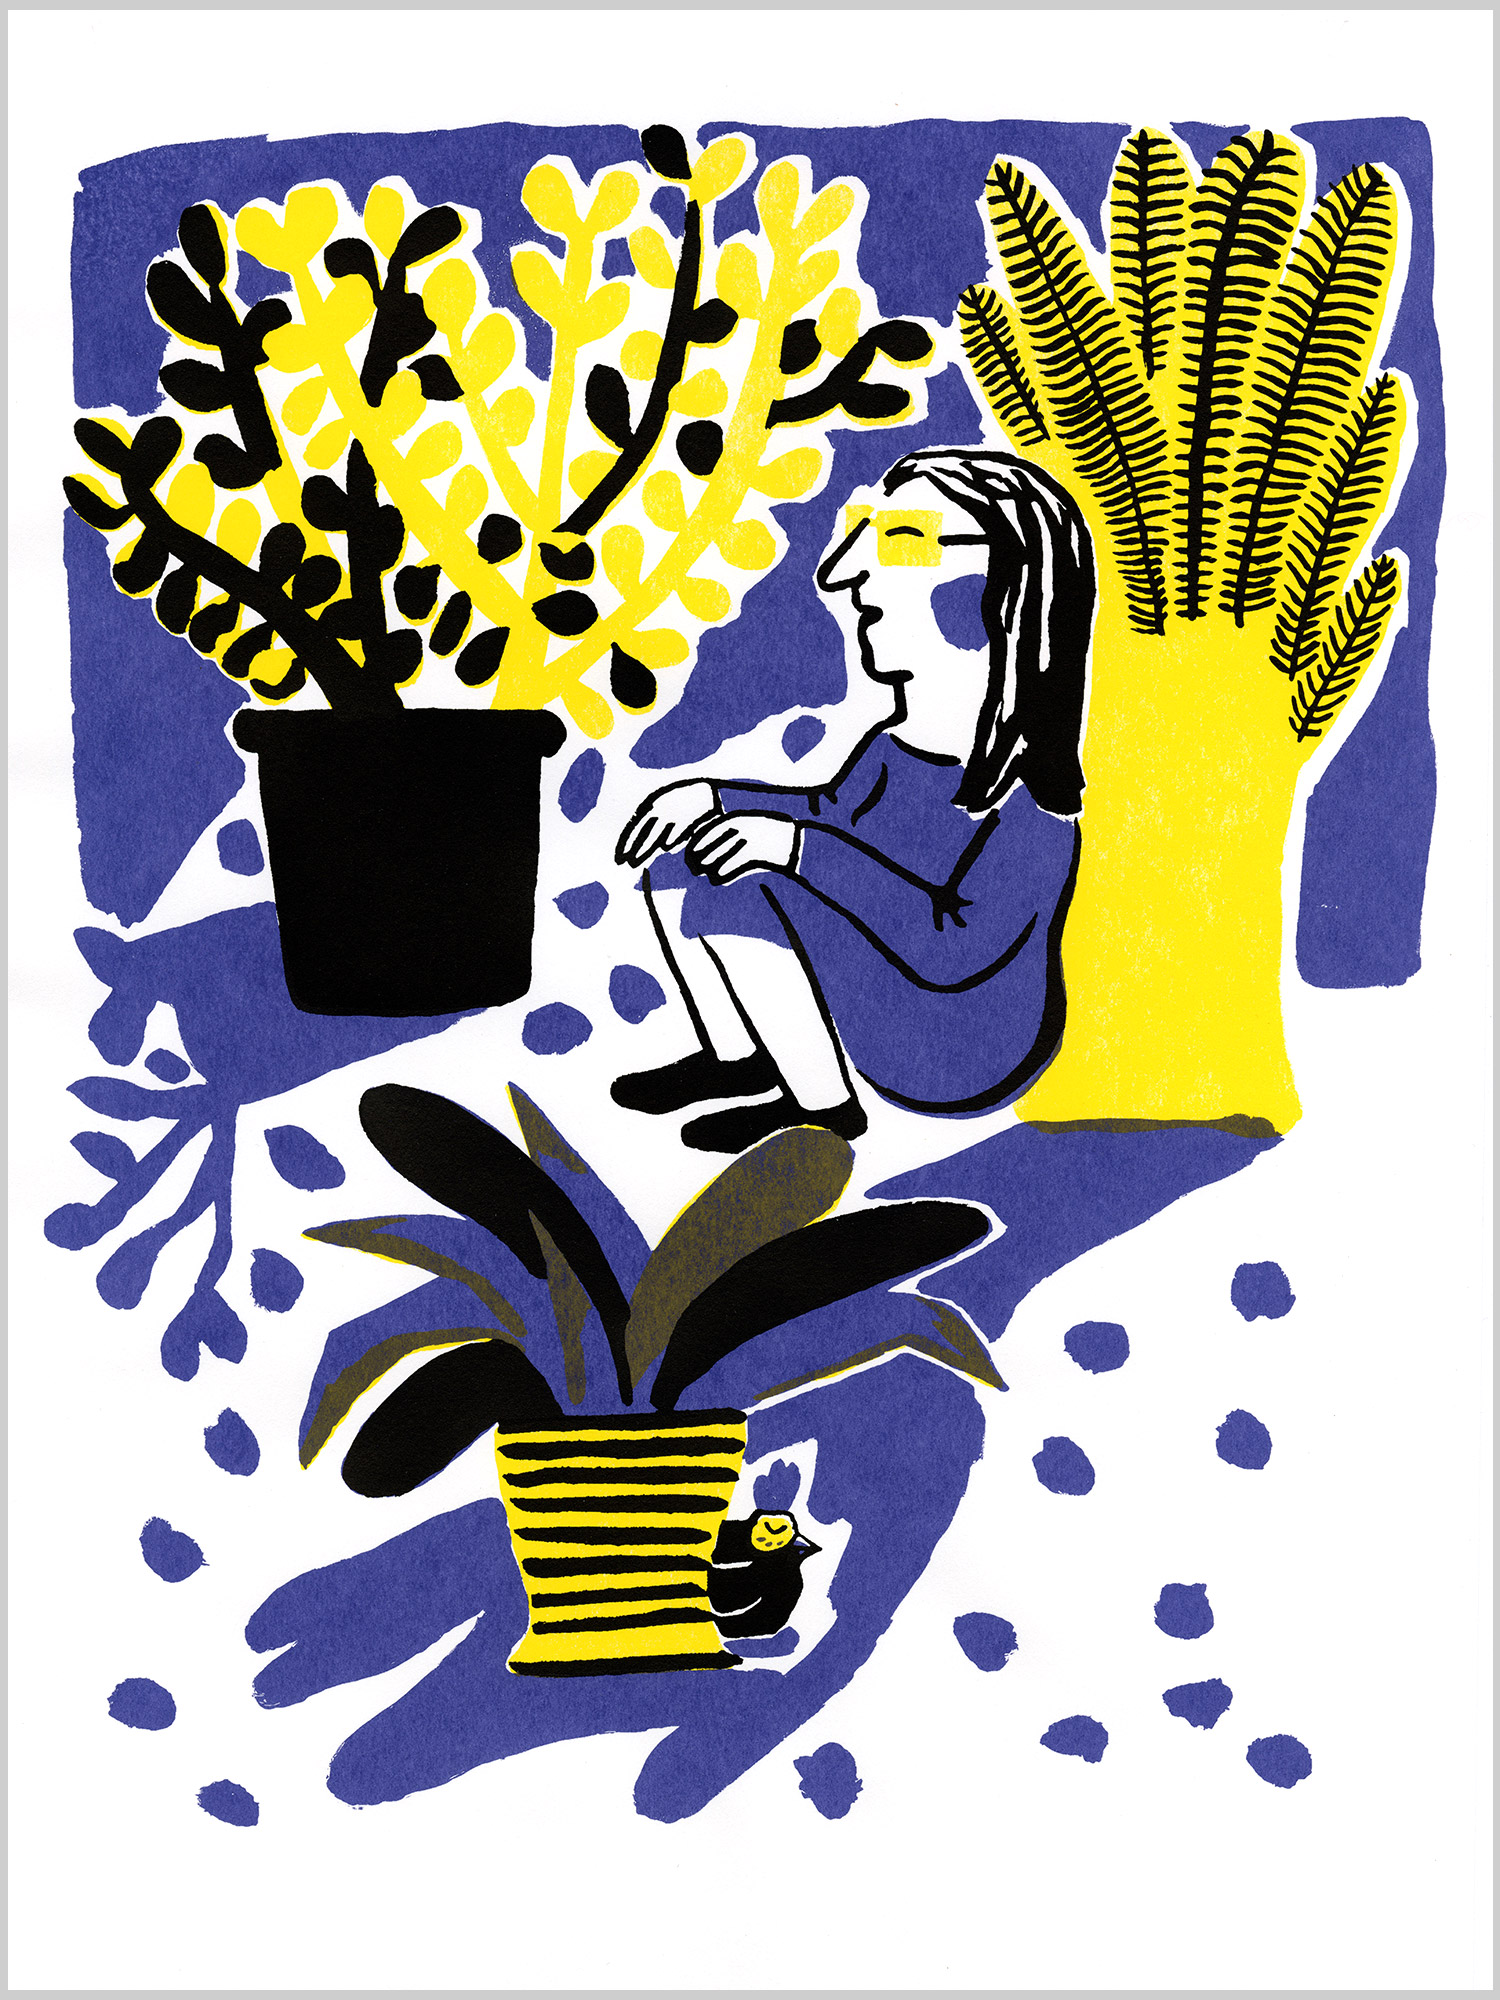 Mon amie Poulette 02 © Magali Bardos sérigraphie affiche silkscreenprinting poster jaune violet noir yellow black